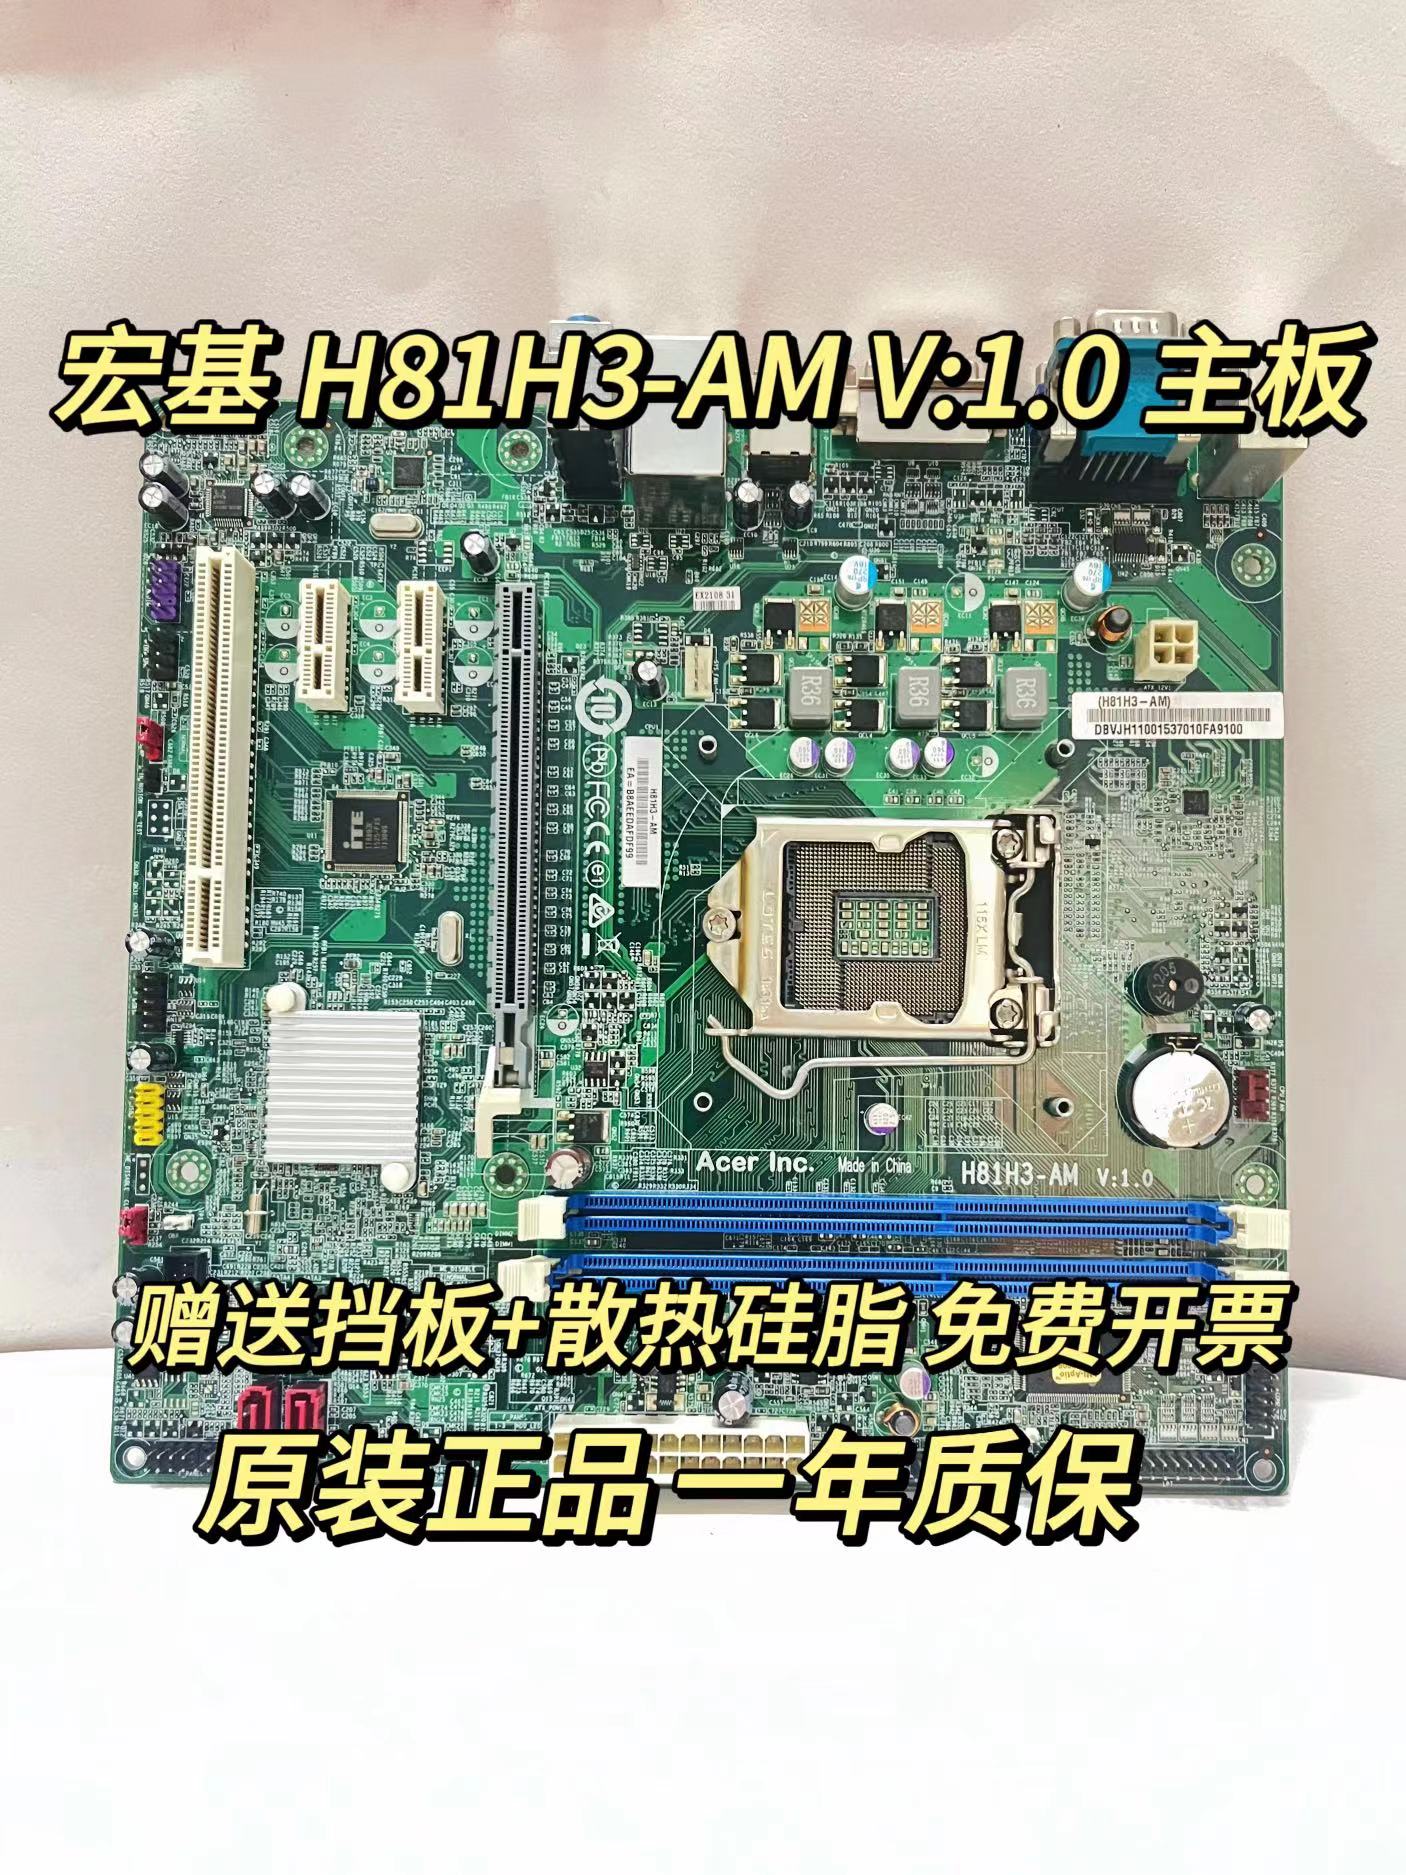 正品宏基H81H3-AM 主板ACER VD430 D430商祺N4630 T4630 1150针 电脑硬件/显示器/电脑周边 主板 原图主图